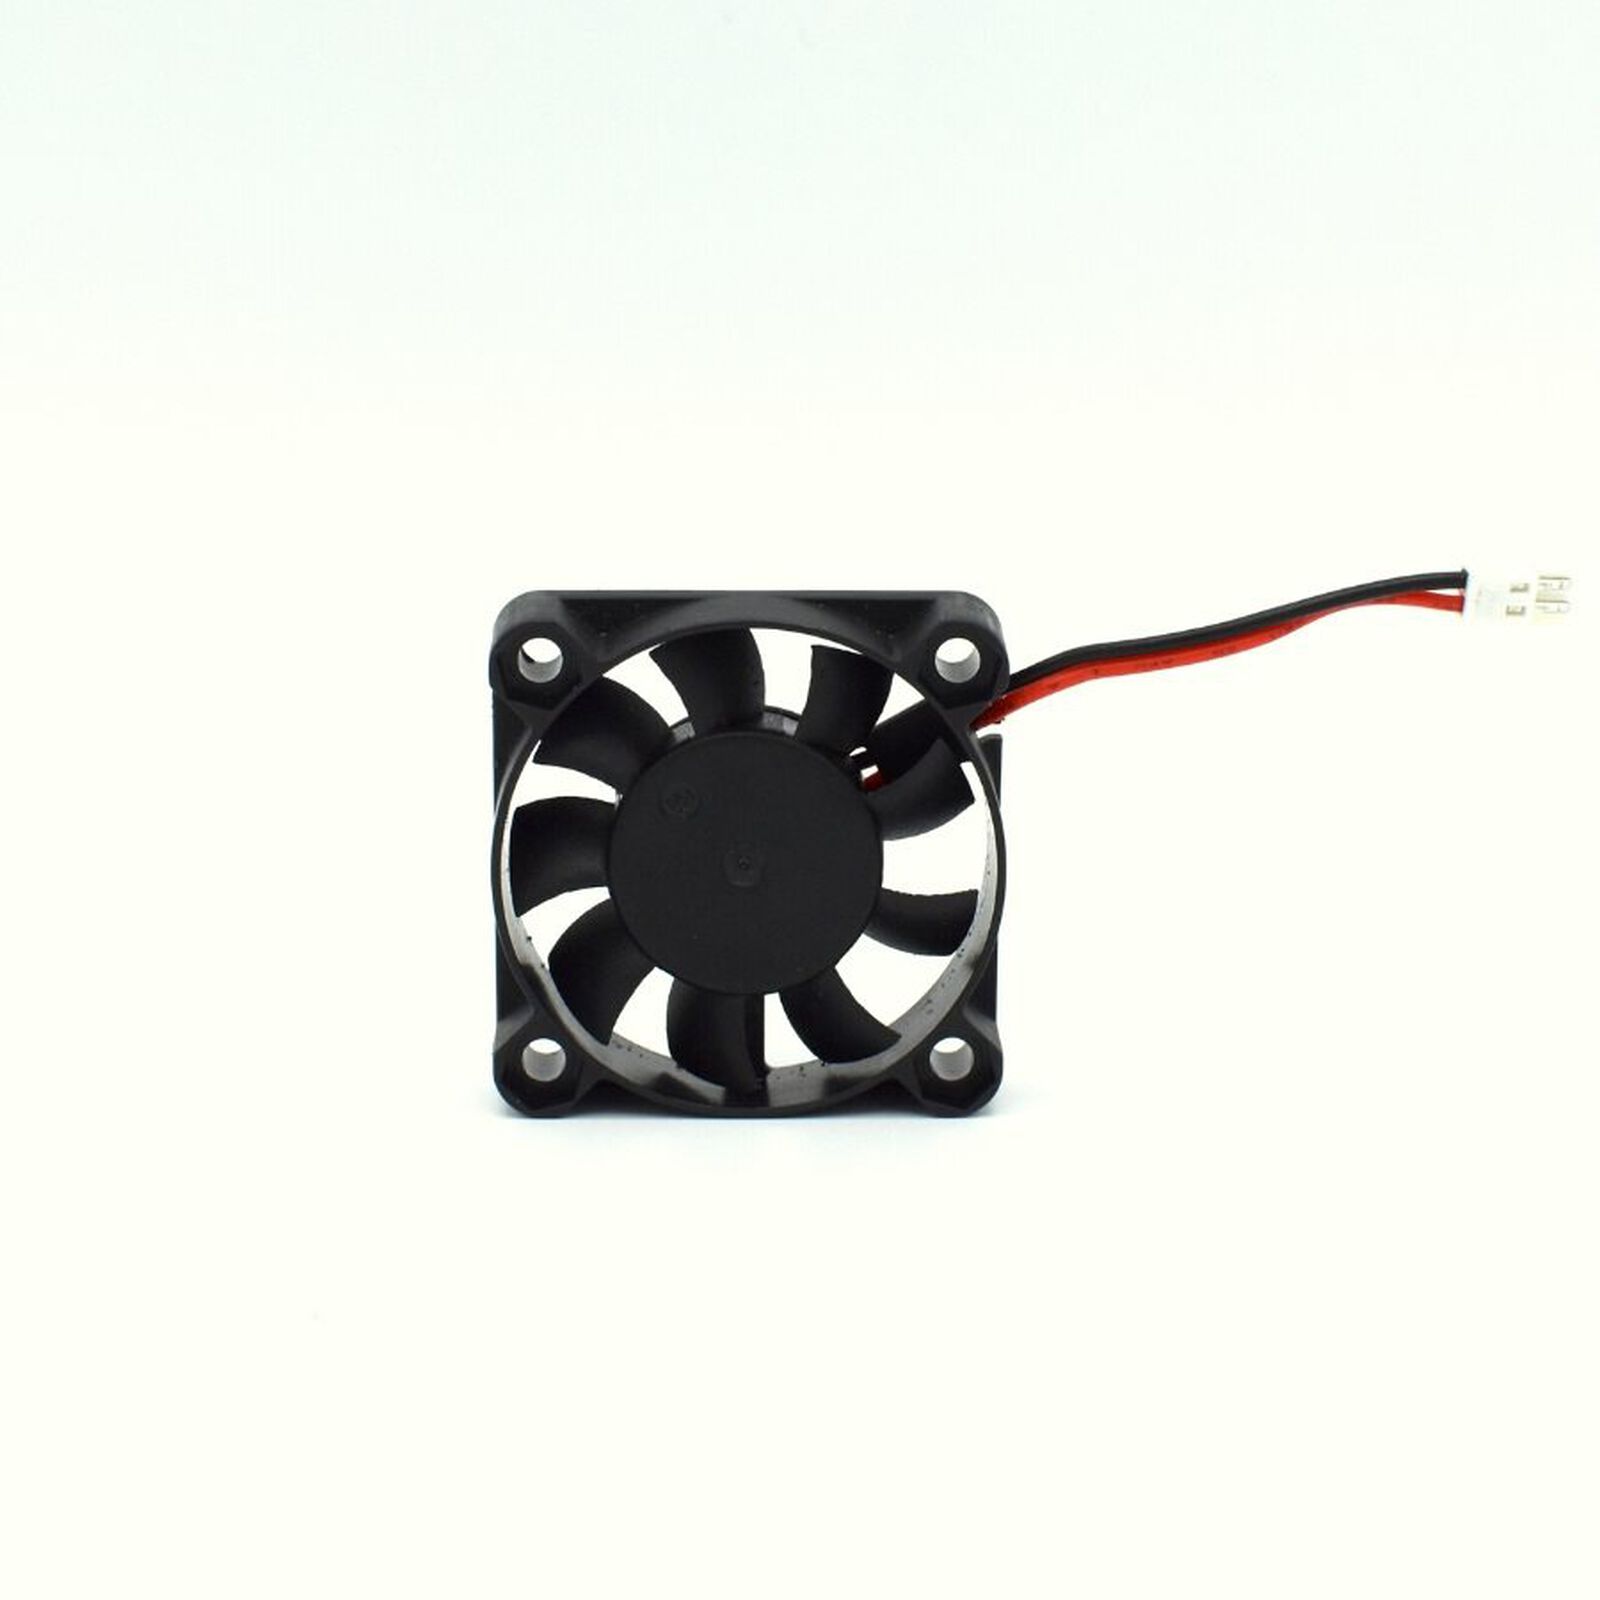 ESC Cooling Fan 40mm: MAMBA MONSTER X 8S